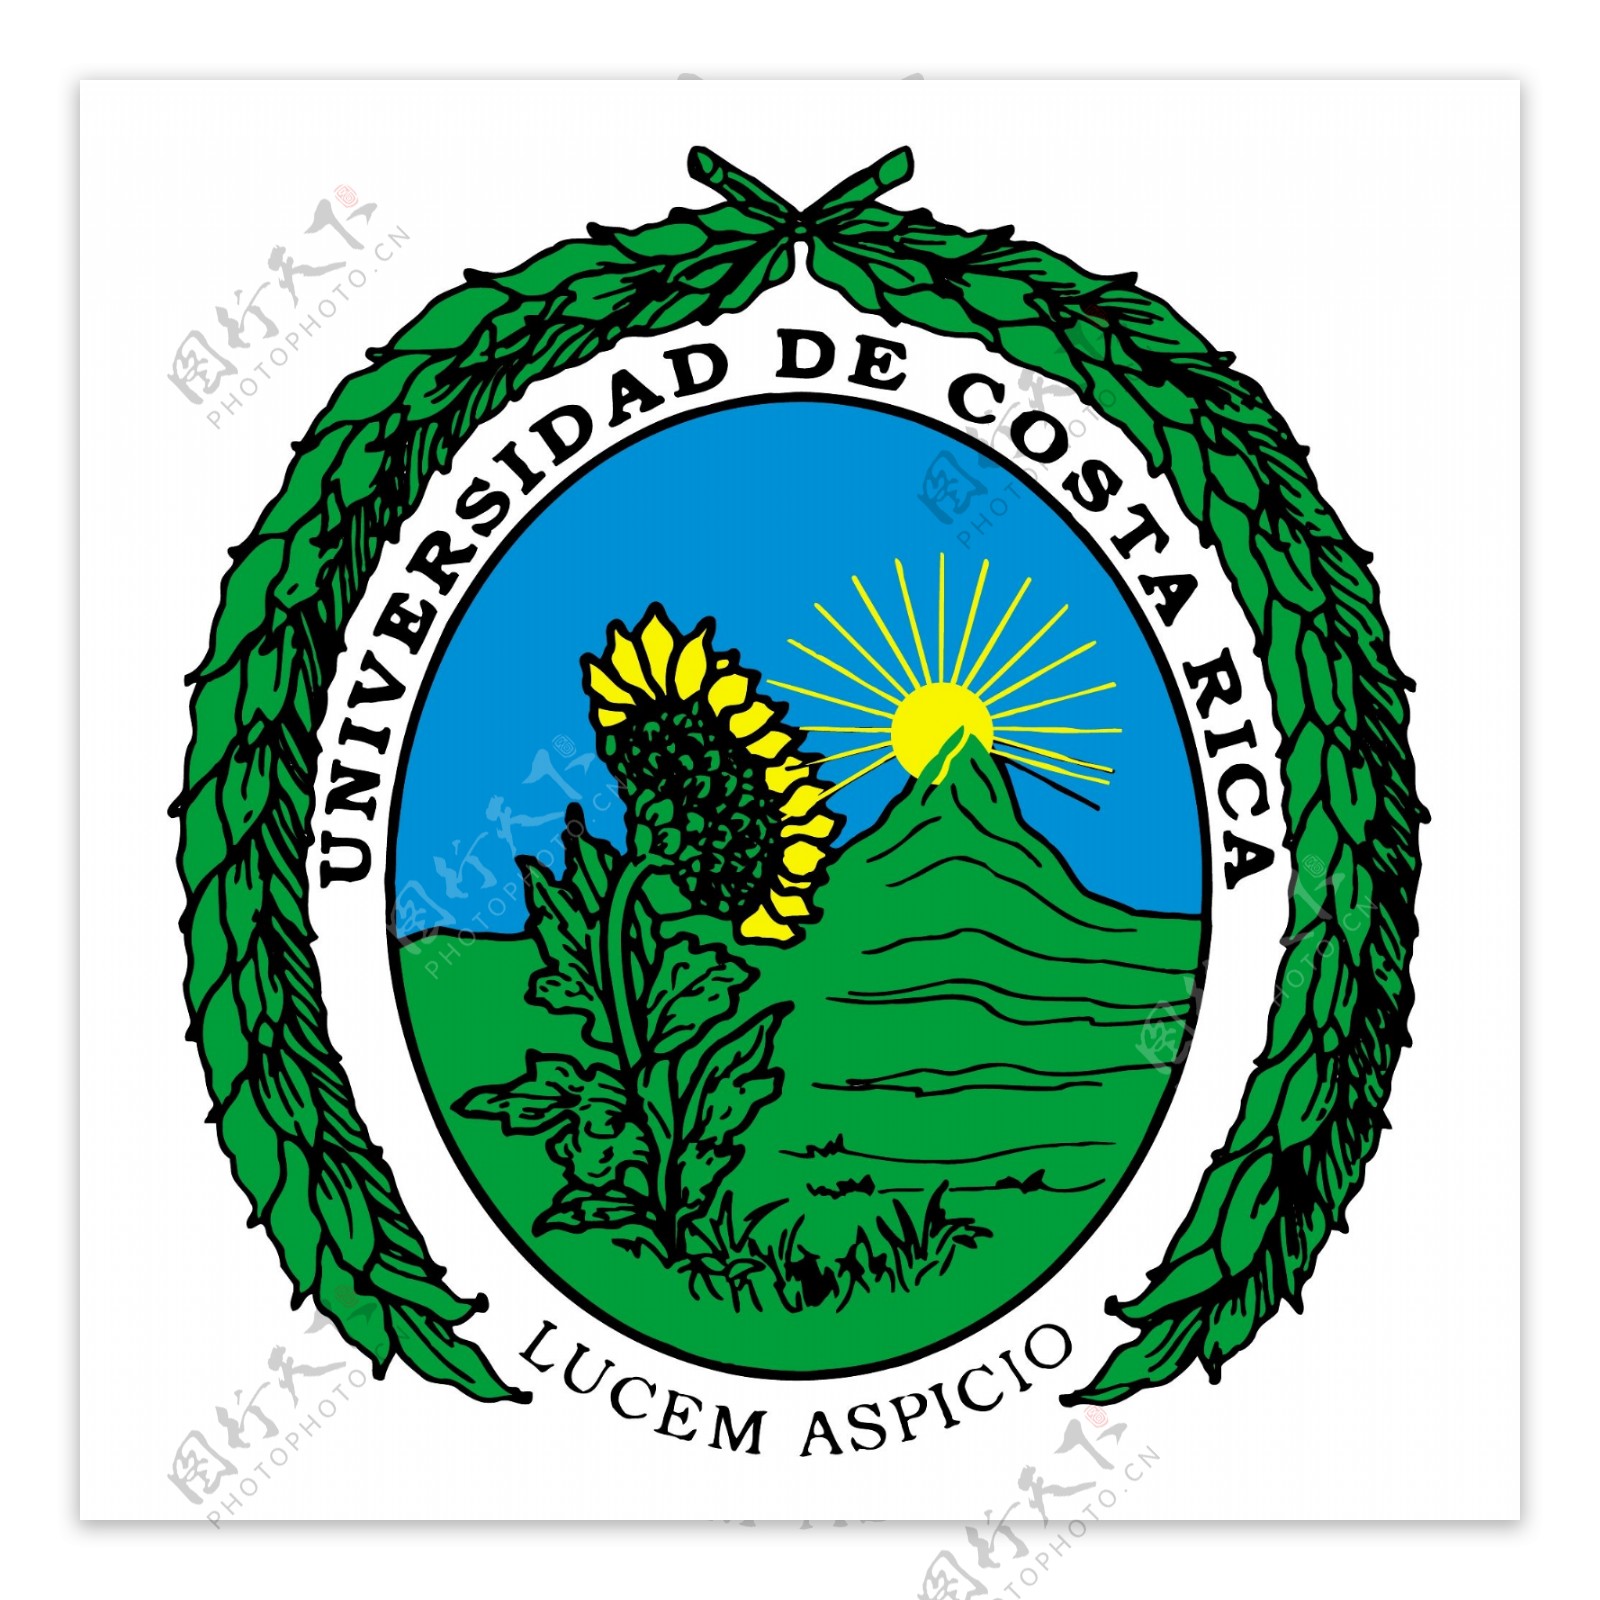 哥斯达黎加大学